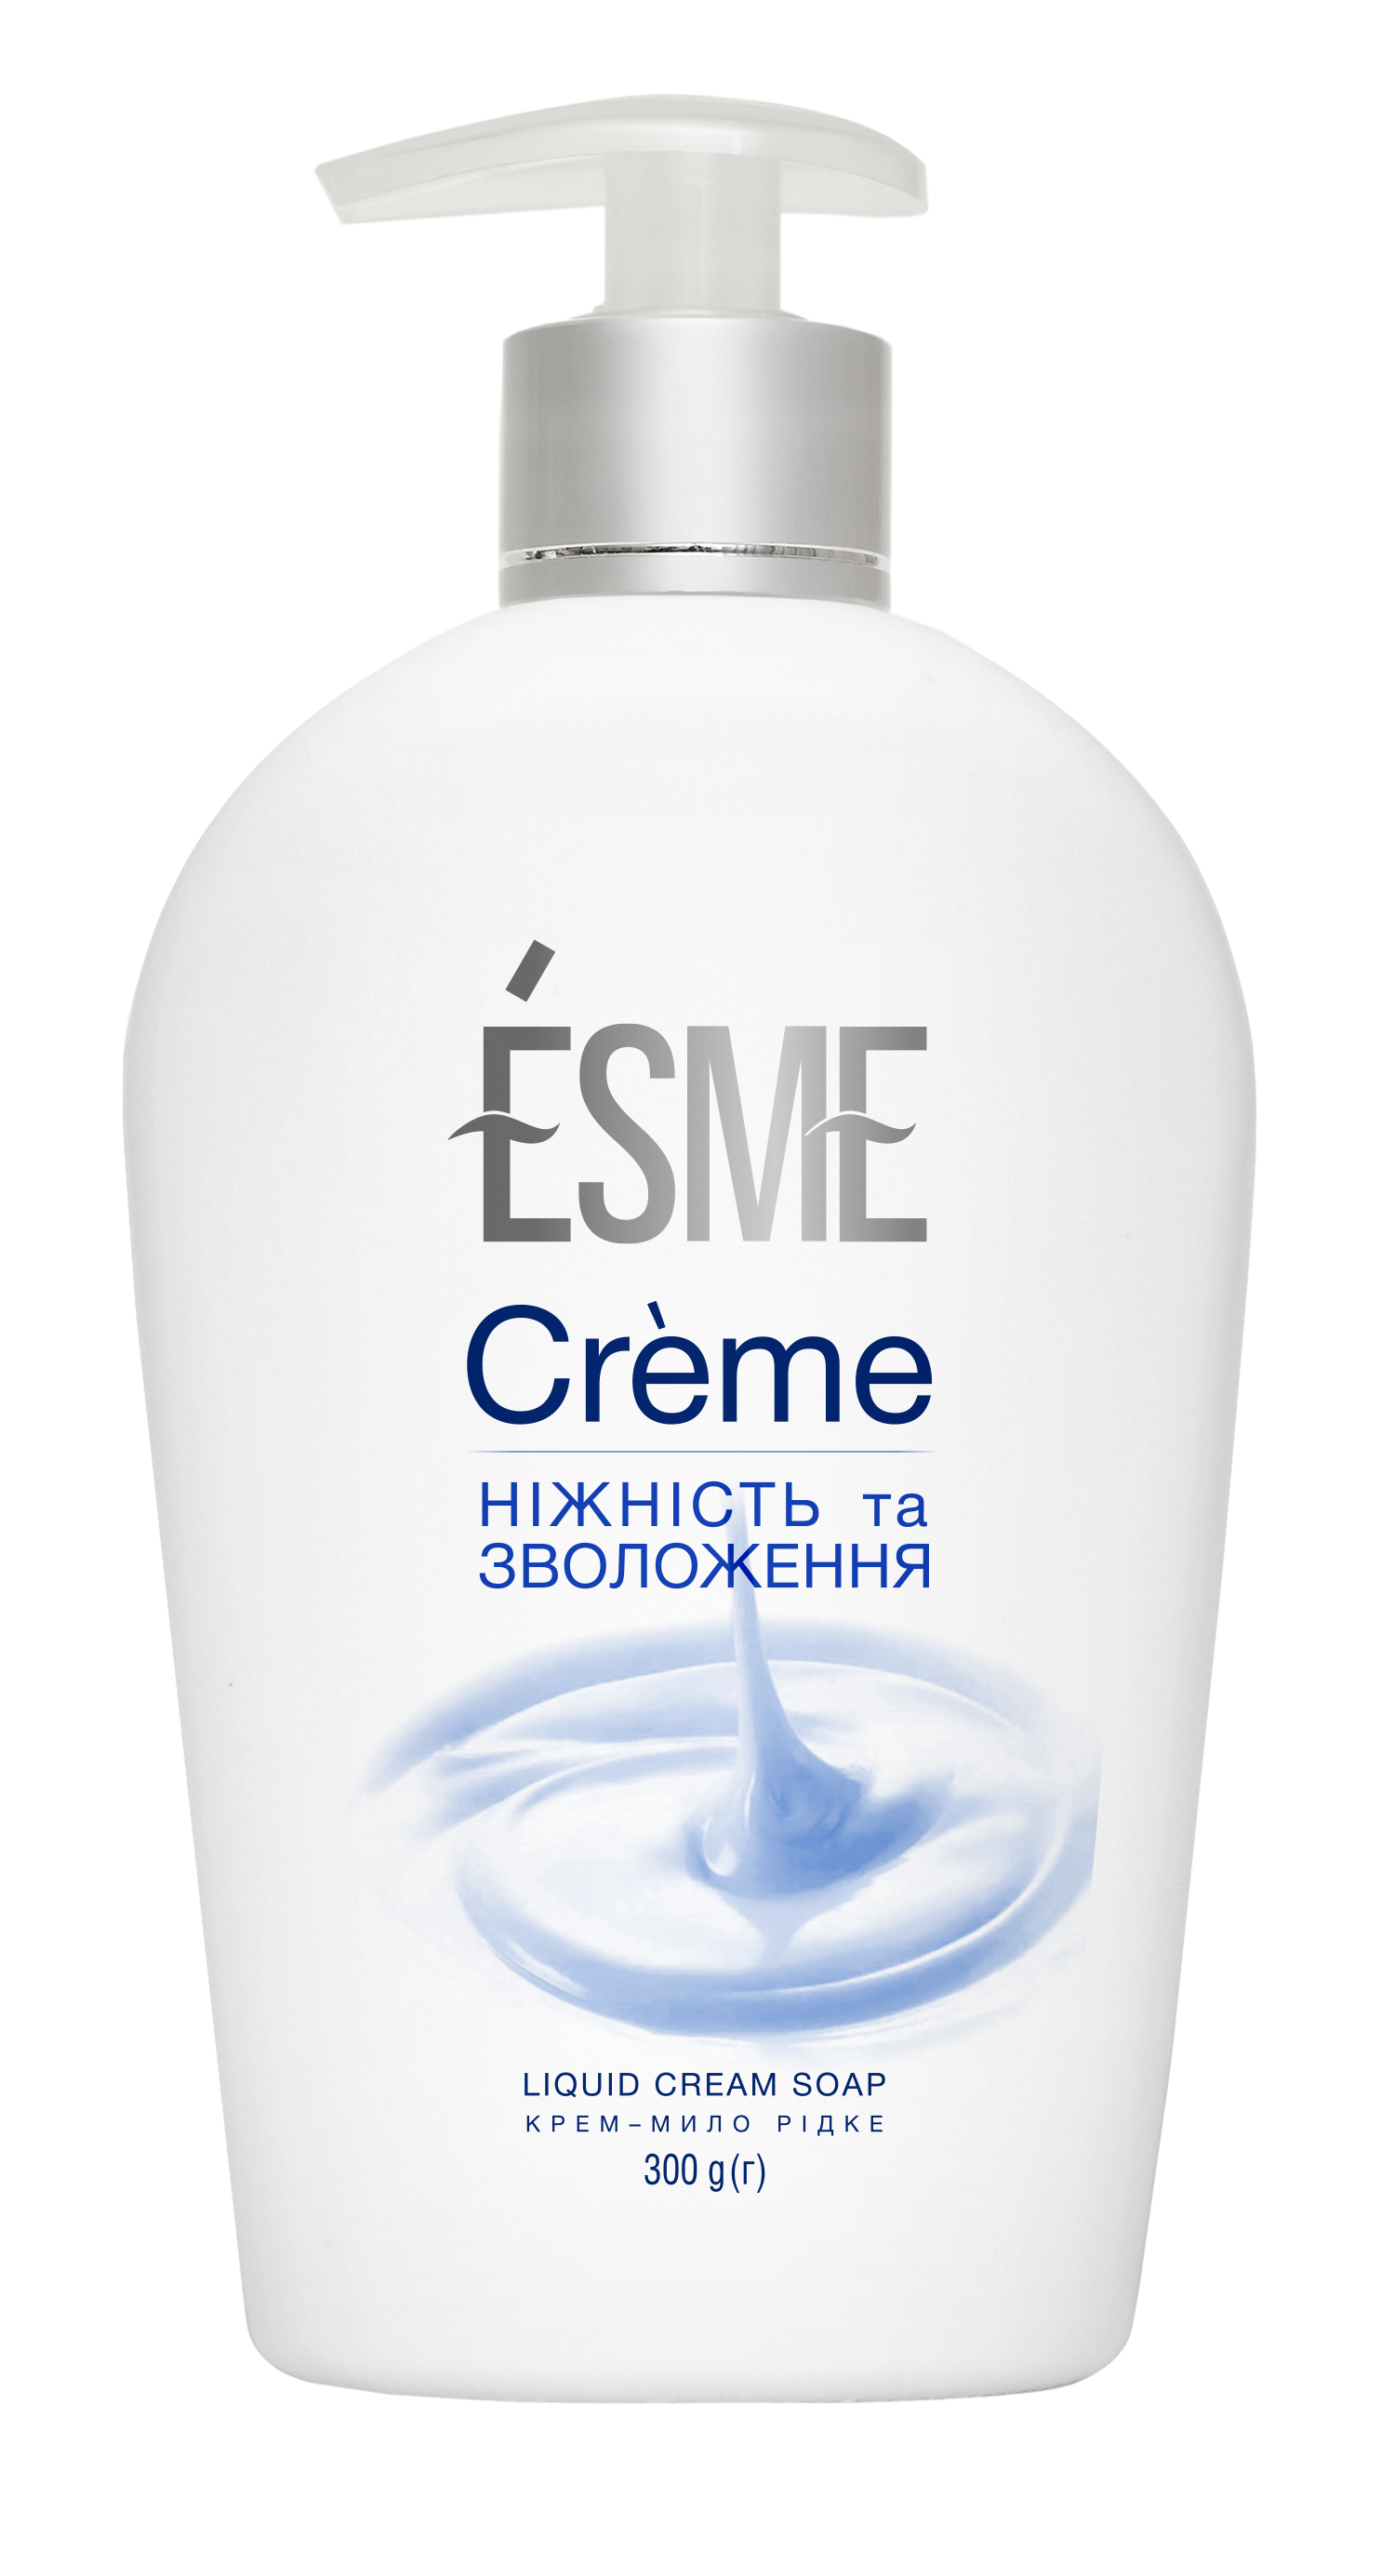 Крем-мыло для рук Esme Creme, 300 мл - фото 1